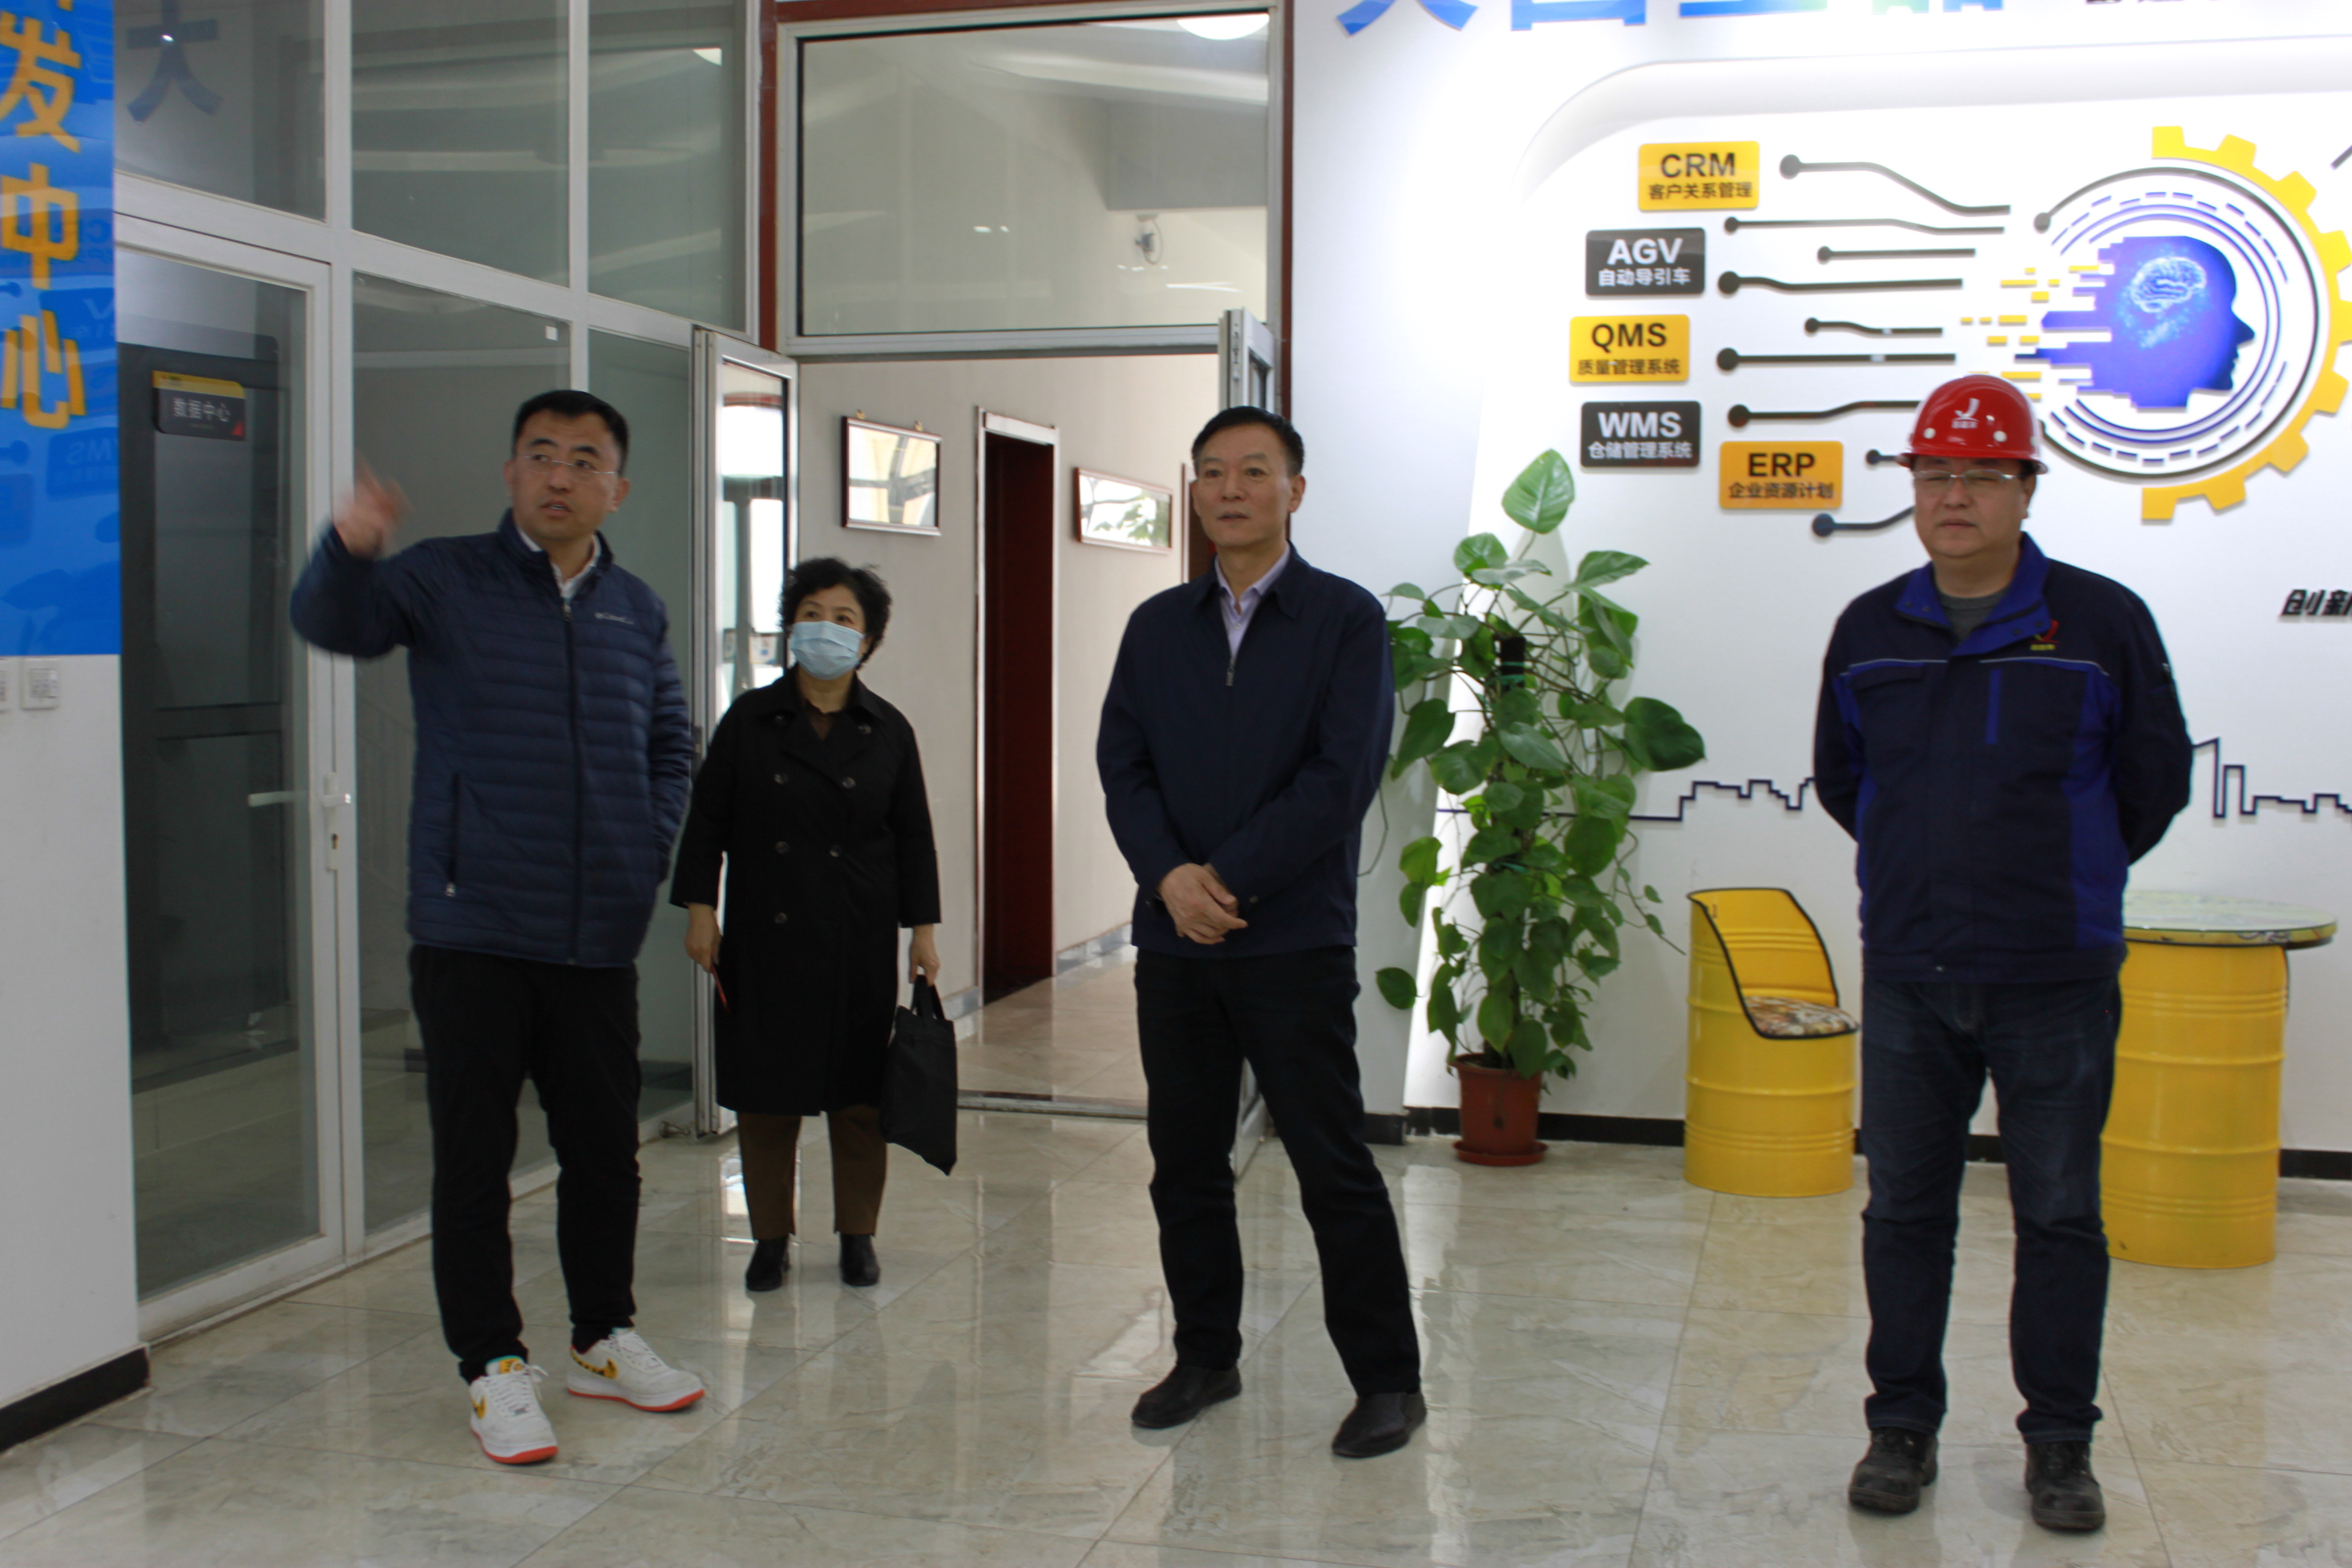 天津市北辰区人大常委会副主任刘基智一行到天津吉达尔重型机械科技股份有限公司调研